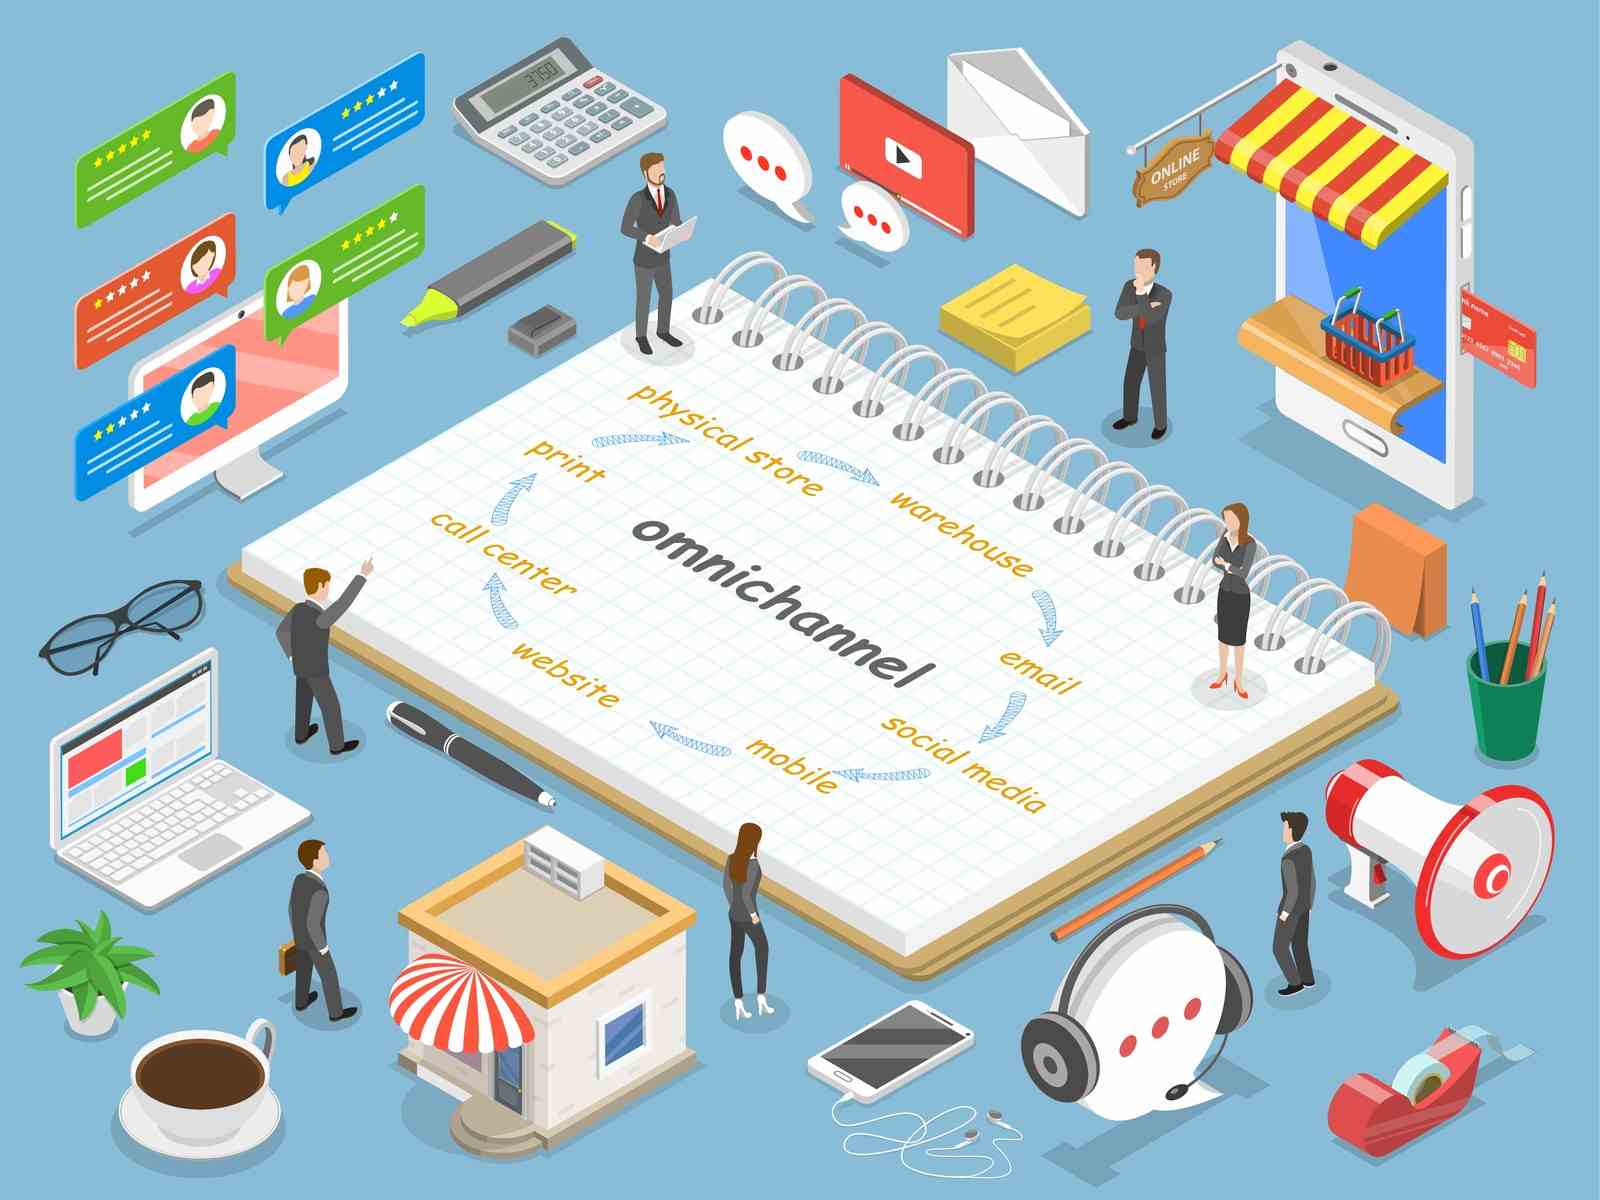 Trải nghiệm khách hàng đa kênh: Chiến lược hiệu quả cho bán hàng trực tuyến
